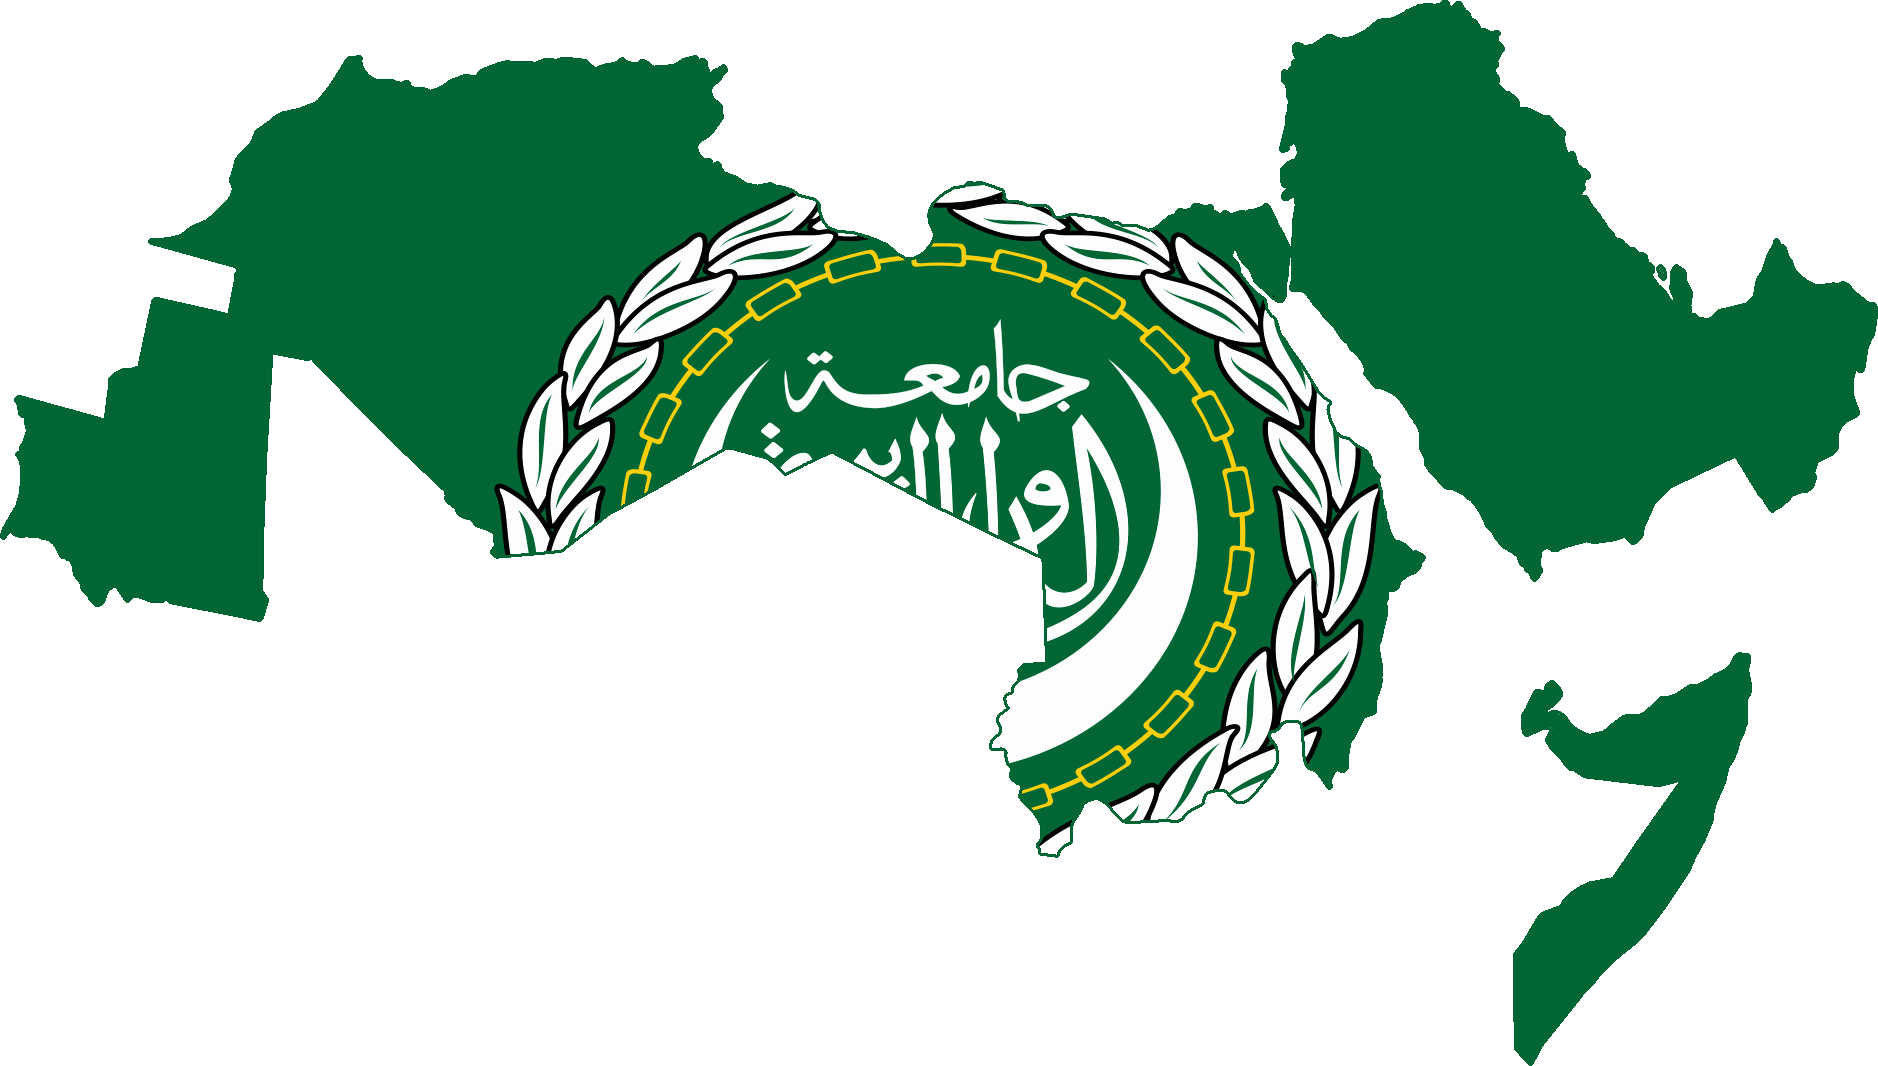 Lega Araba mondo arabo